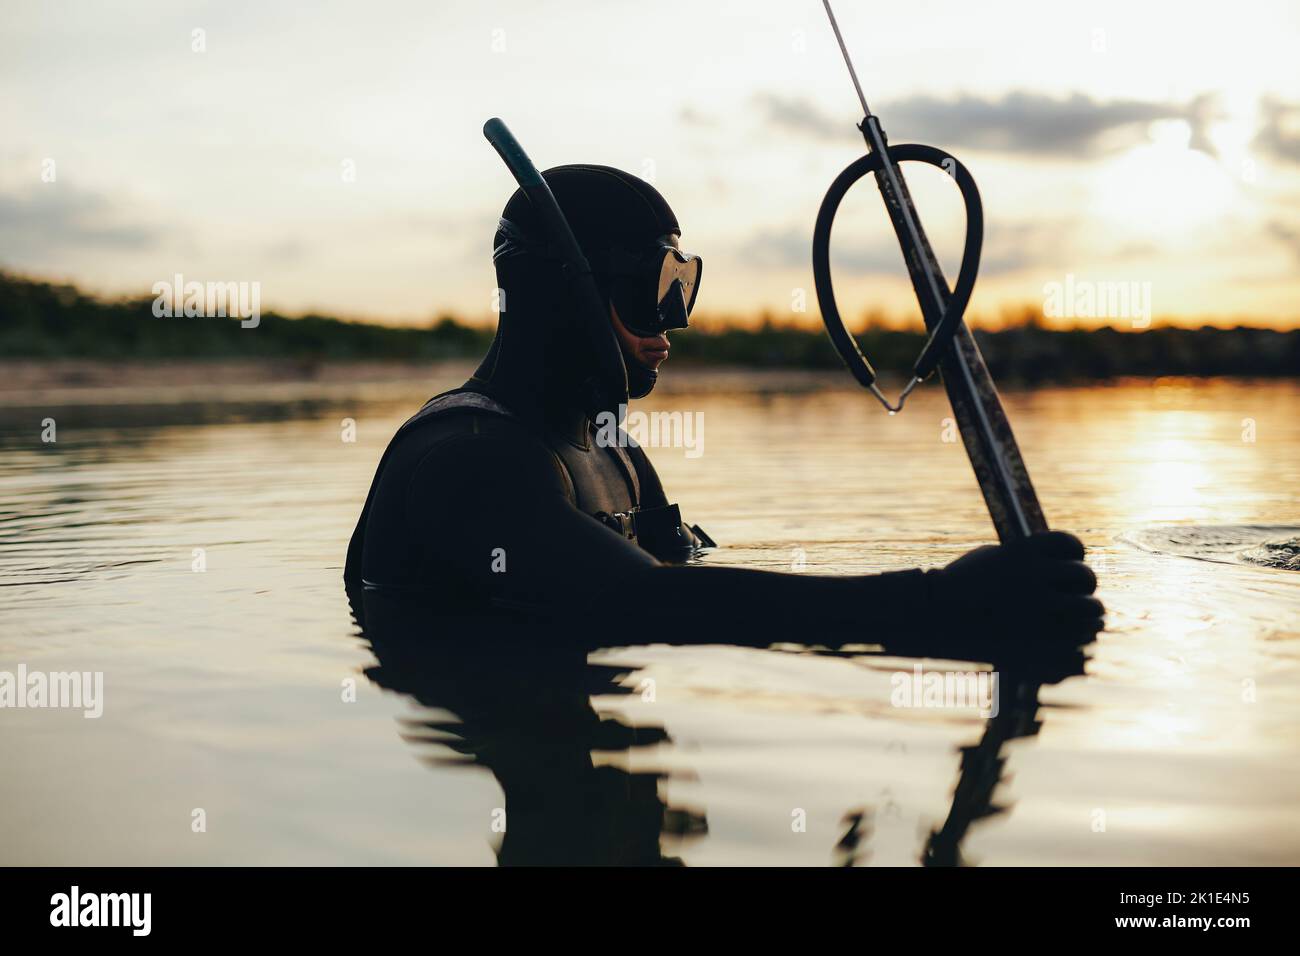 Speerfischen mit einer Speerpistole im Meer. Abenteuerlicher junger Mann mit Tauchausrüstung und Neoprenanzug mitten im Meer. Stockfoto